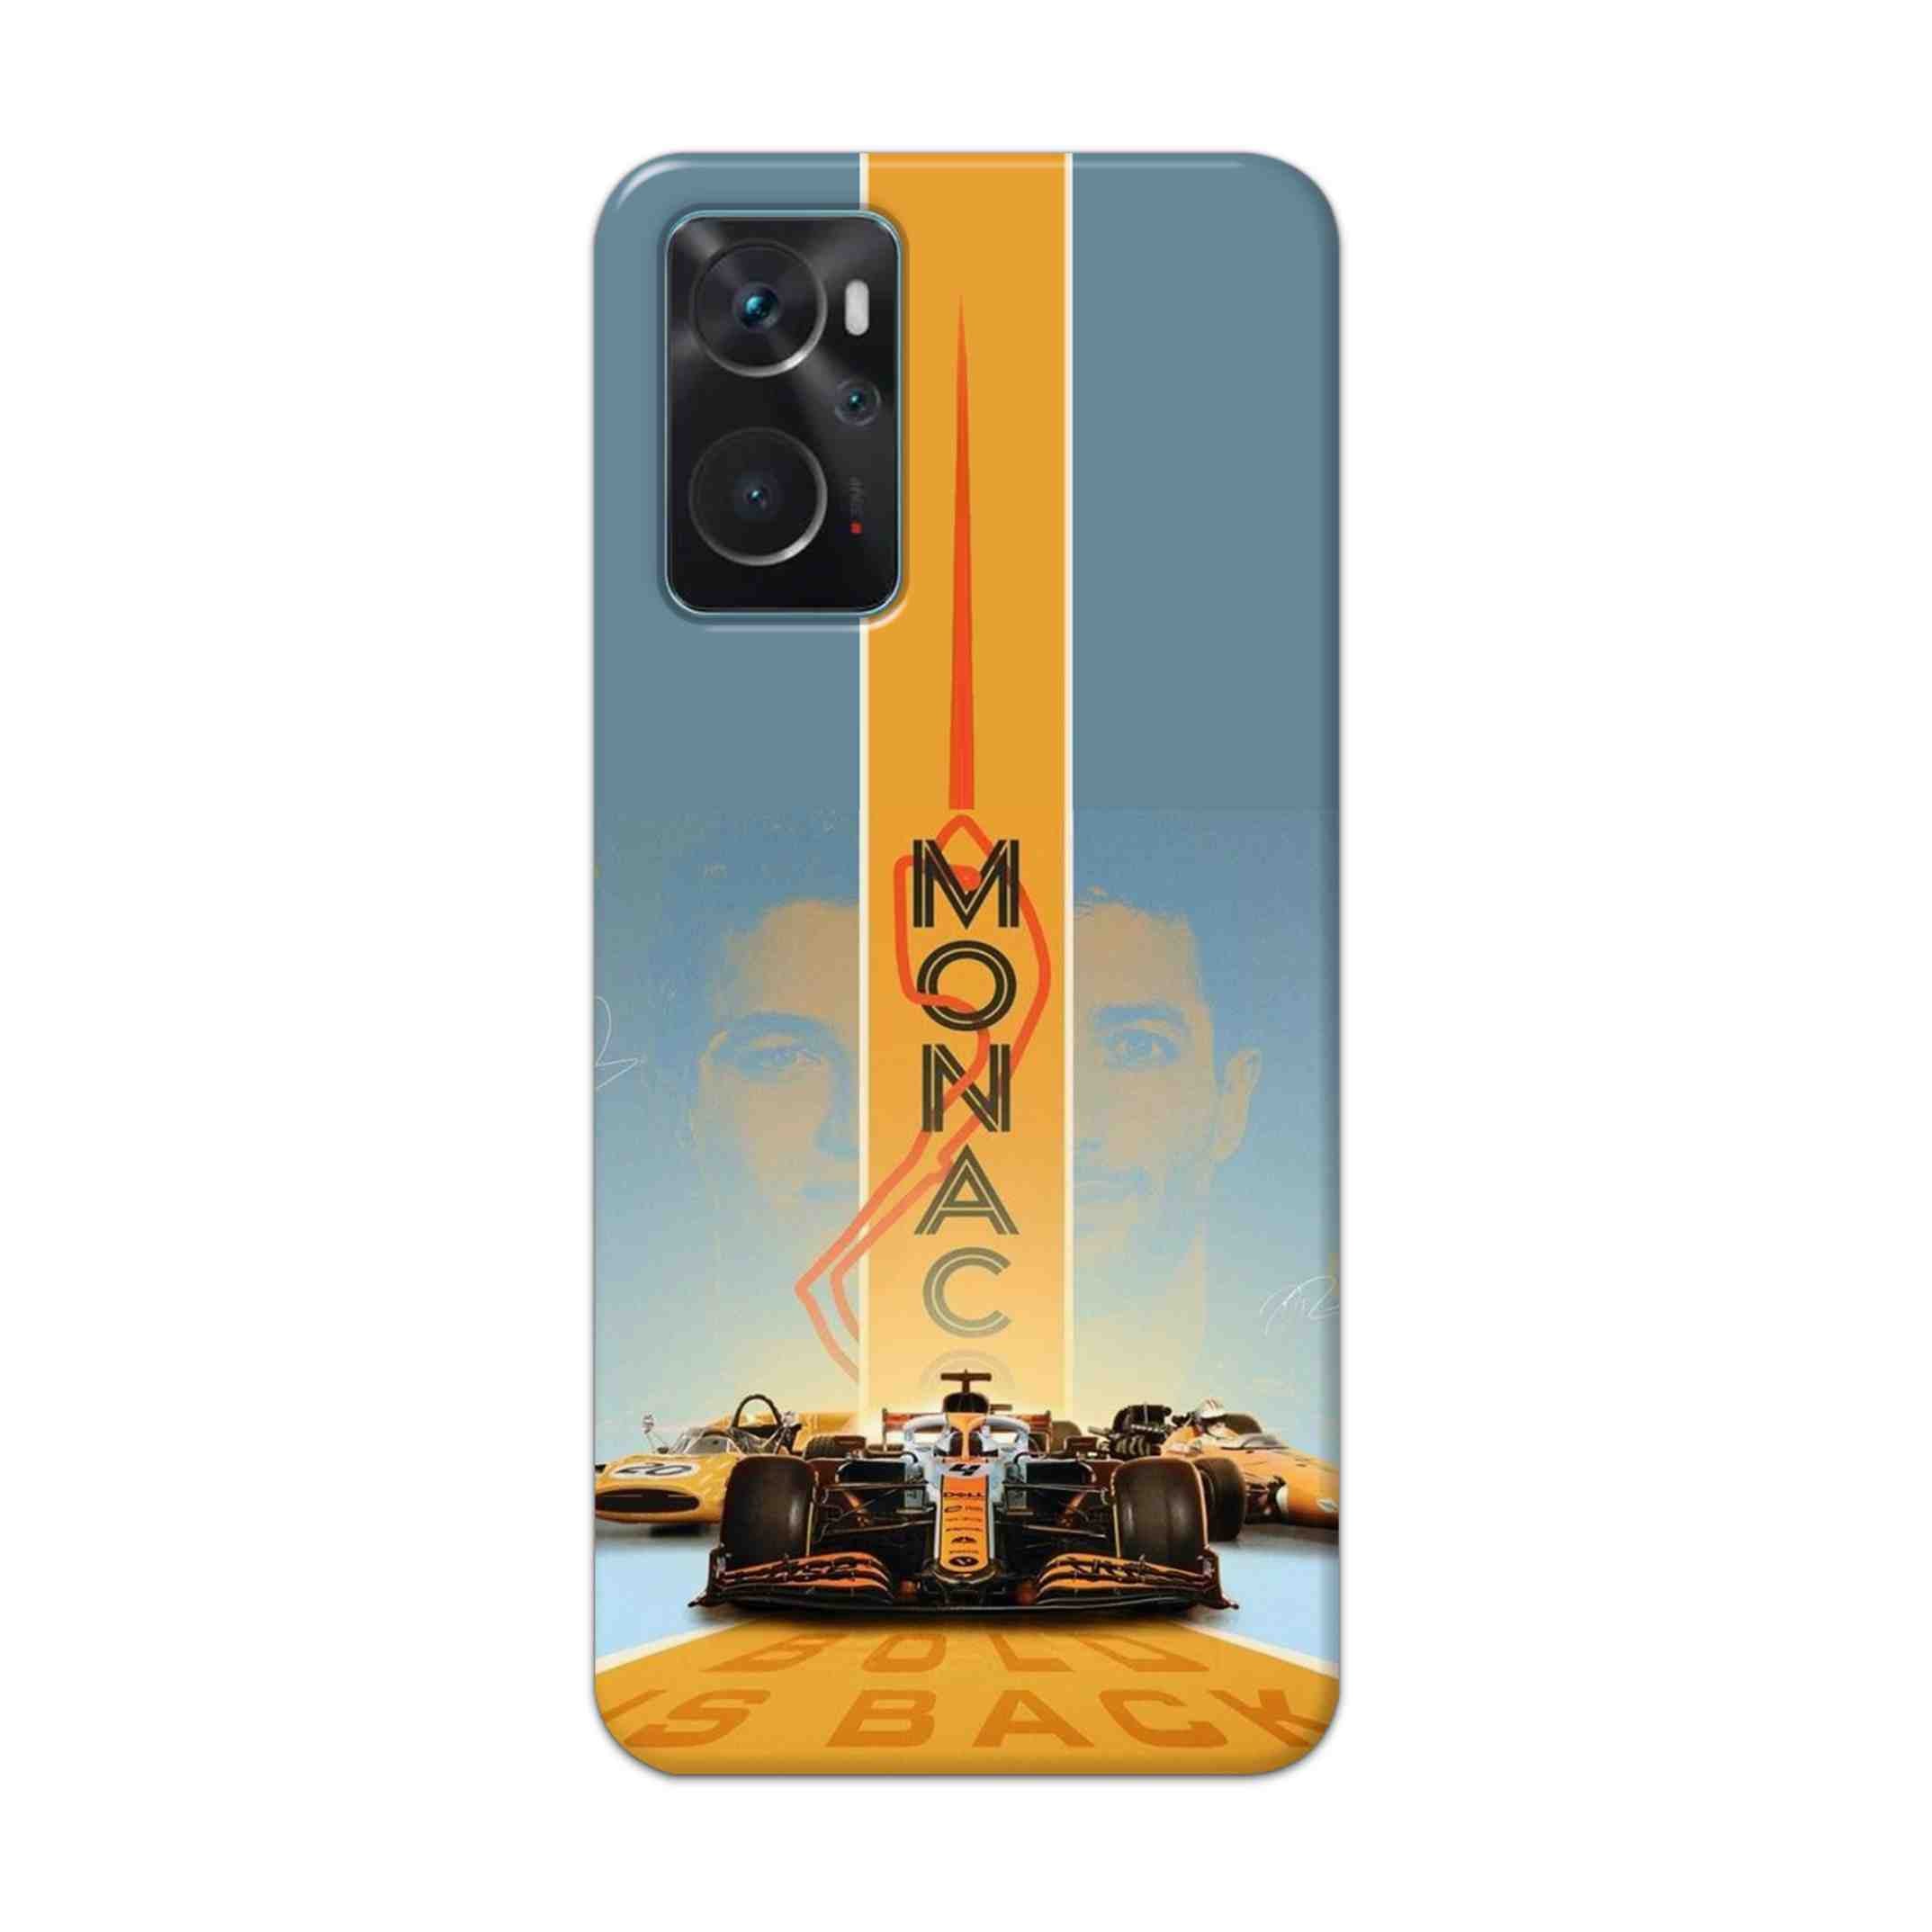 Buy Monac Formula Hard Back Mobile Phone Case Cover For Oppo K10 Online